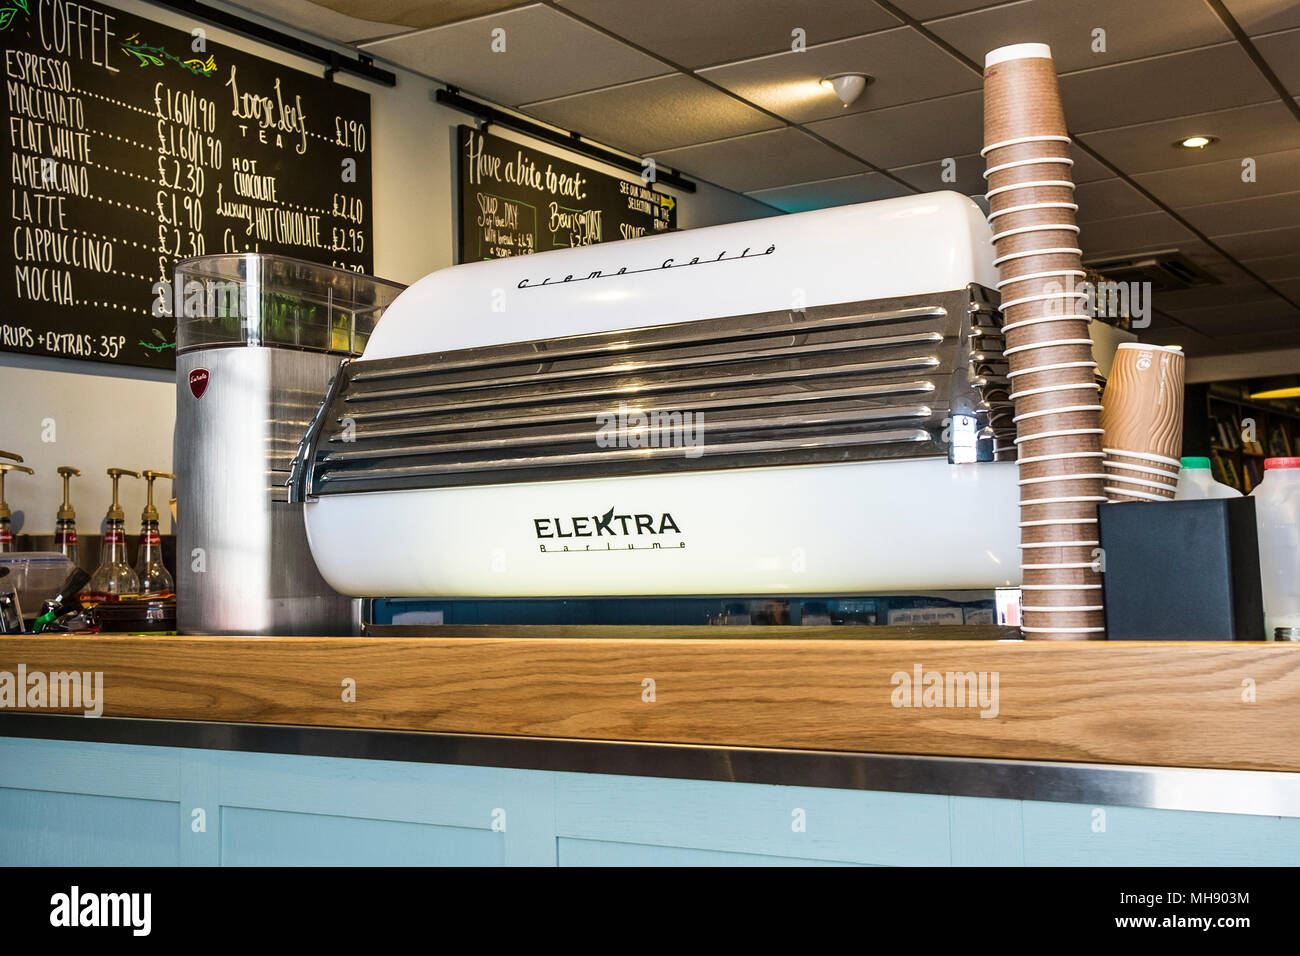 Eine Creme Caffe Elektra Barlume Kaffeemaschine in einem Coffee Shop. Stockfoto